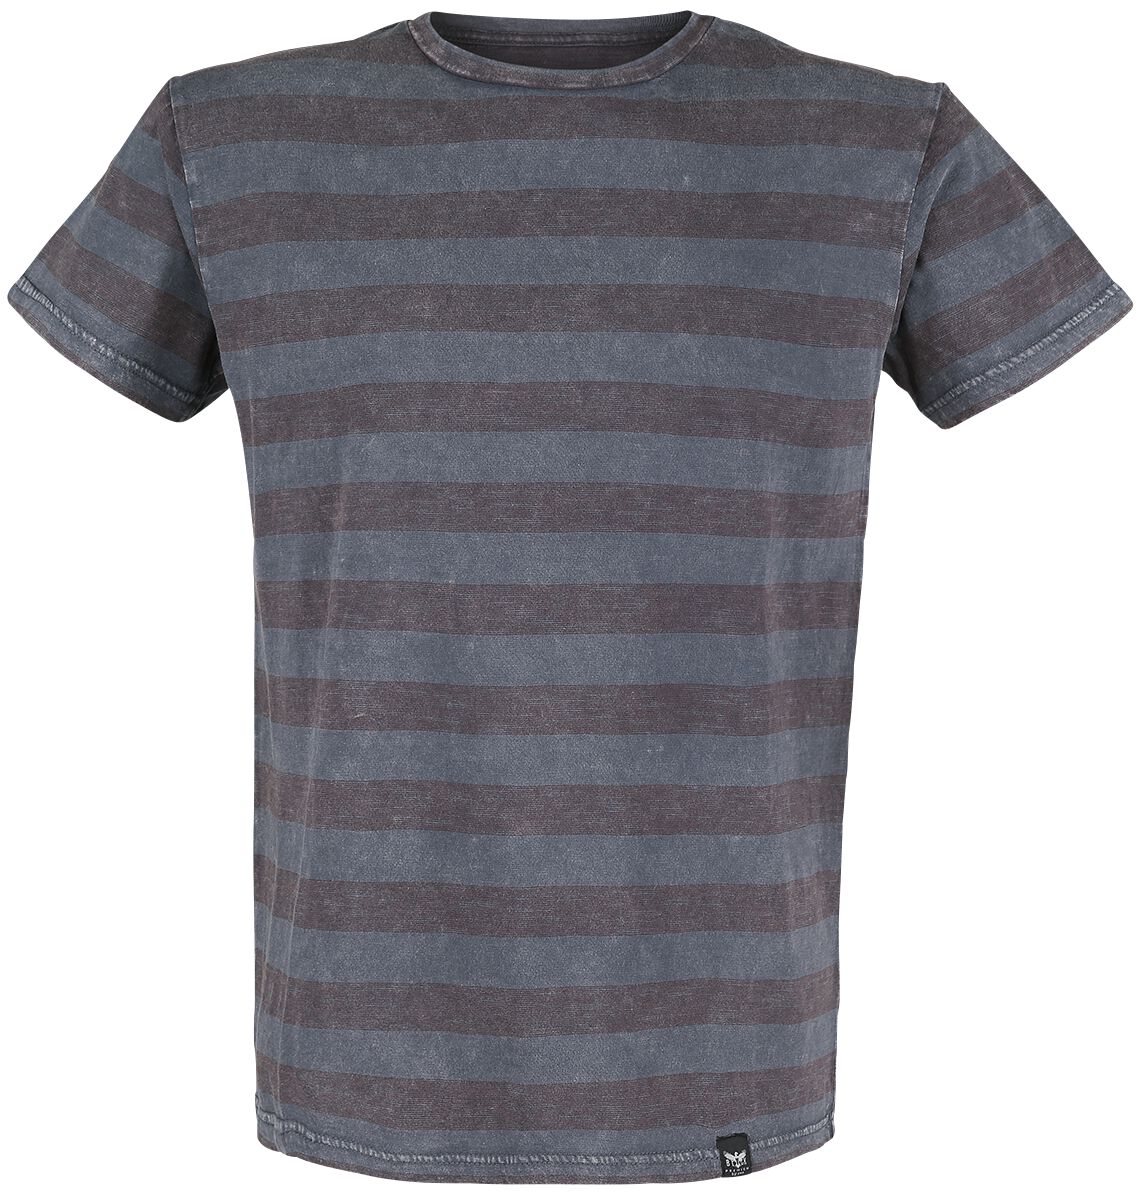 Black Premium by EMP T-Shirt - graues T-Shirt mit Querstreifen und Rundhalsausschnitt - S bis 5XL - für Männer - Größe 4XL - grau